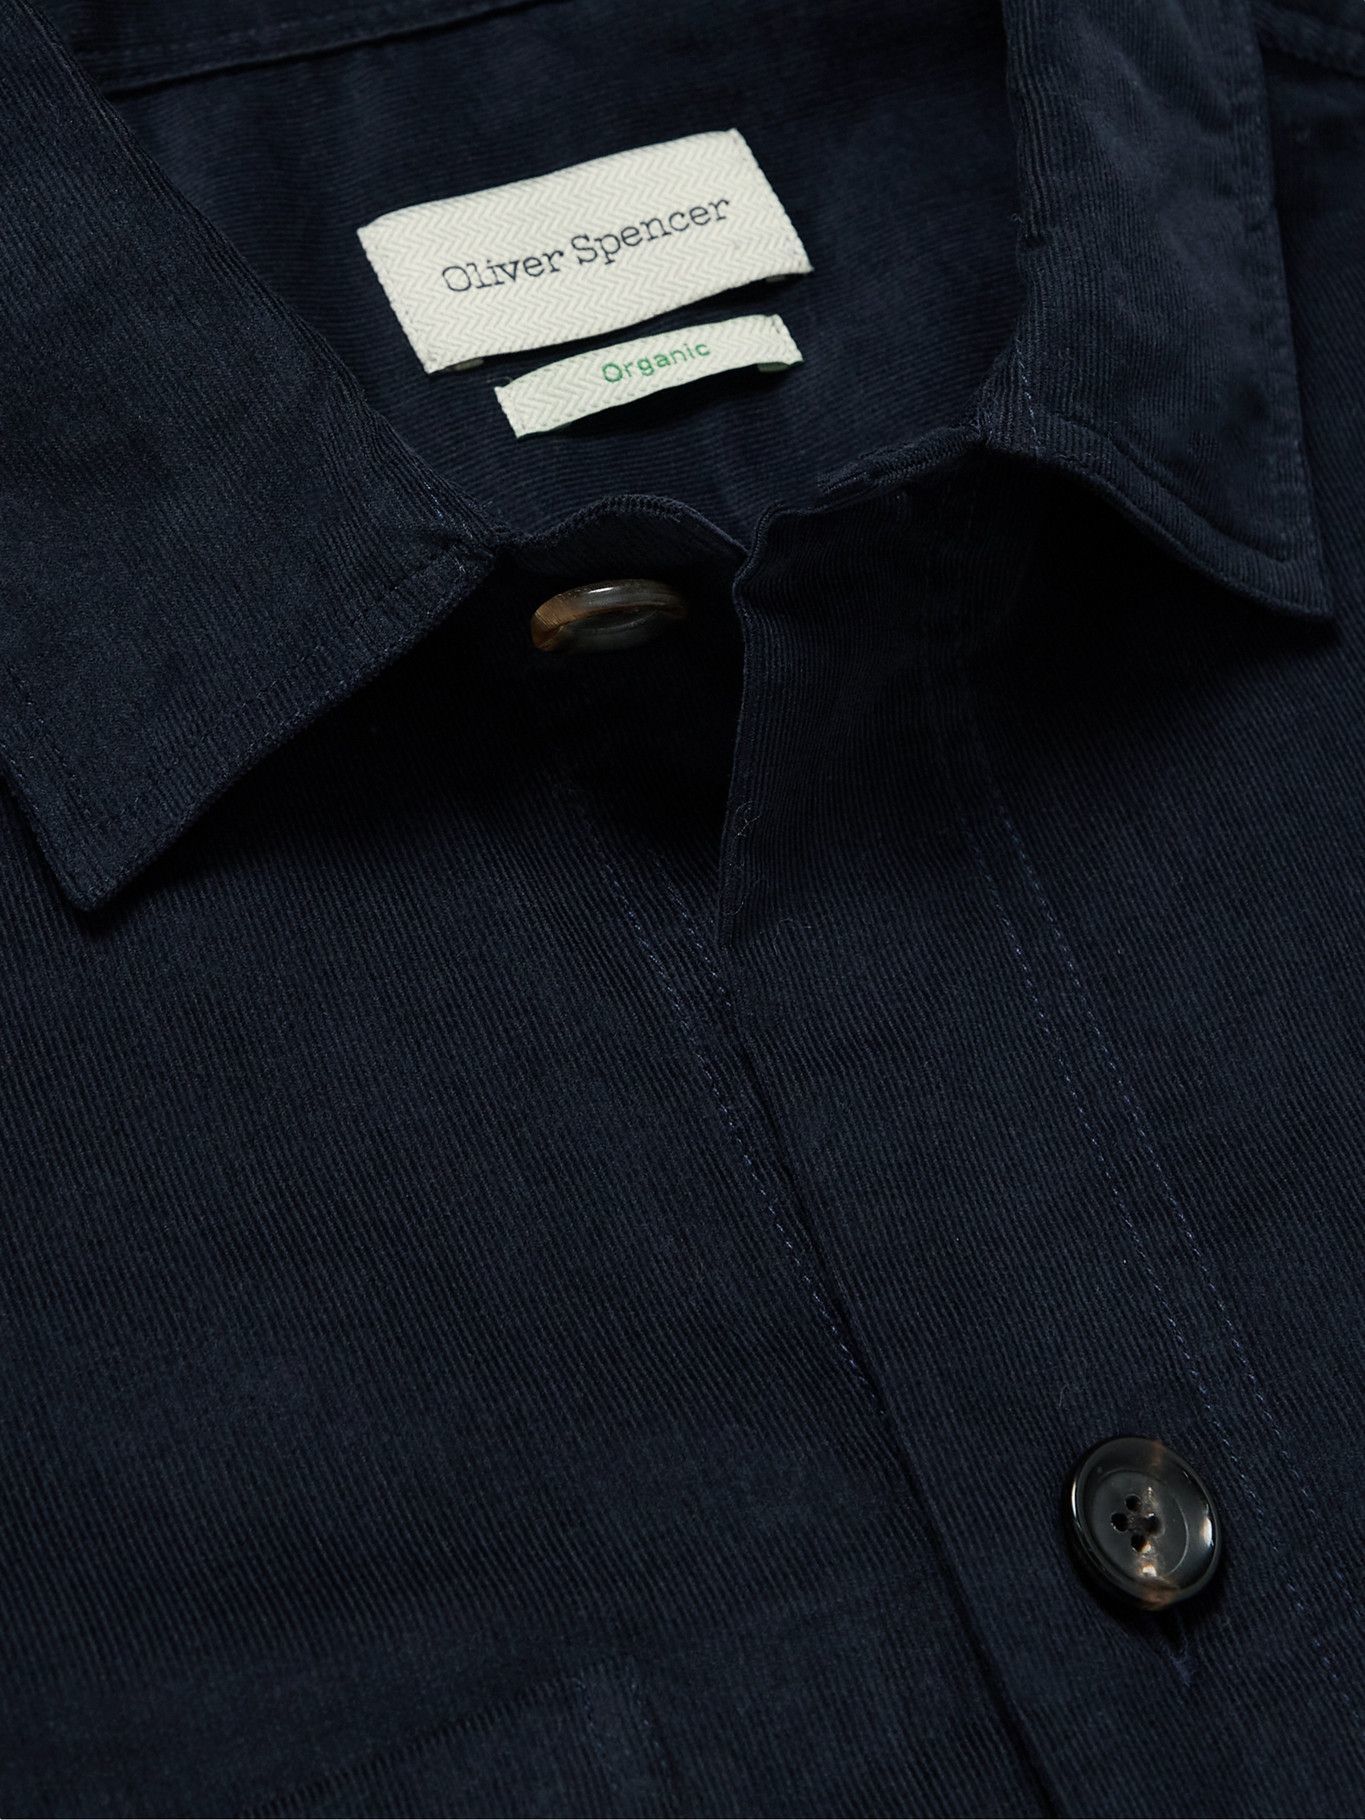 Oliver Spencer - Eltham Organic Cotton-Corduroy Overshirt - Blue